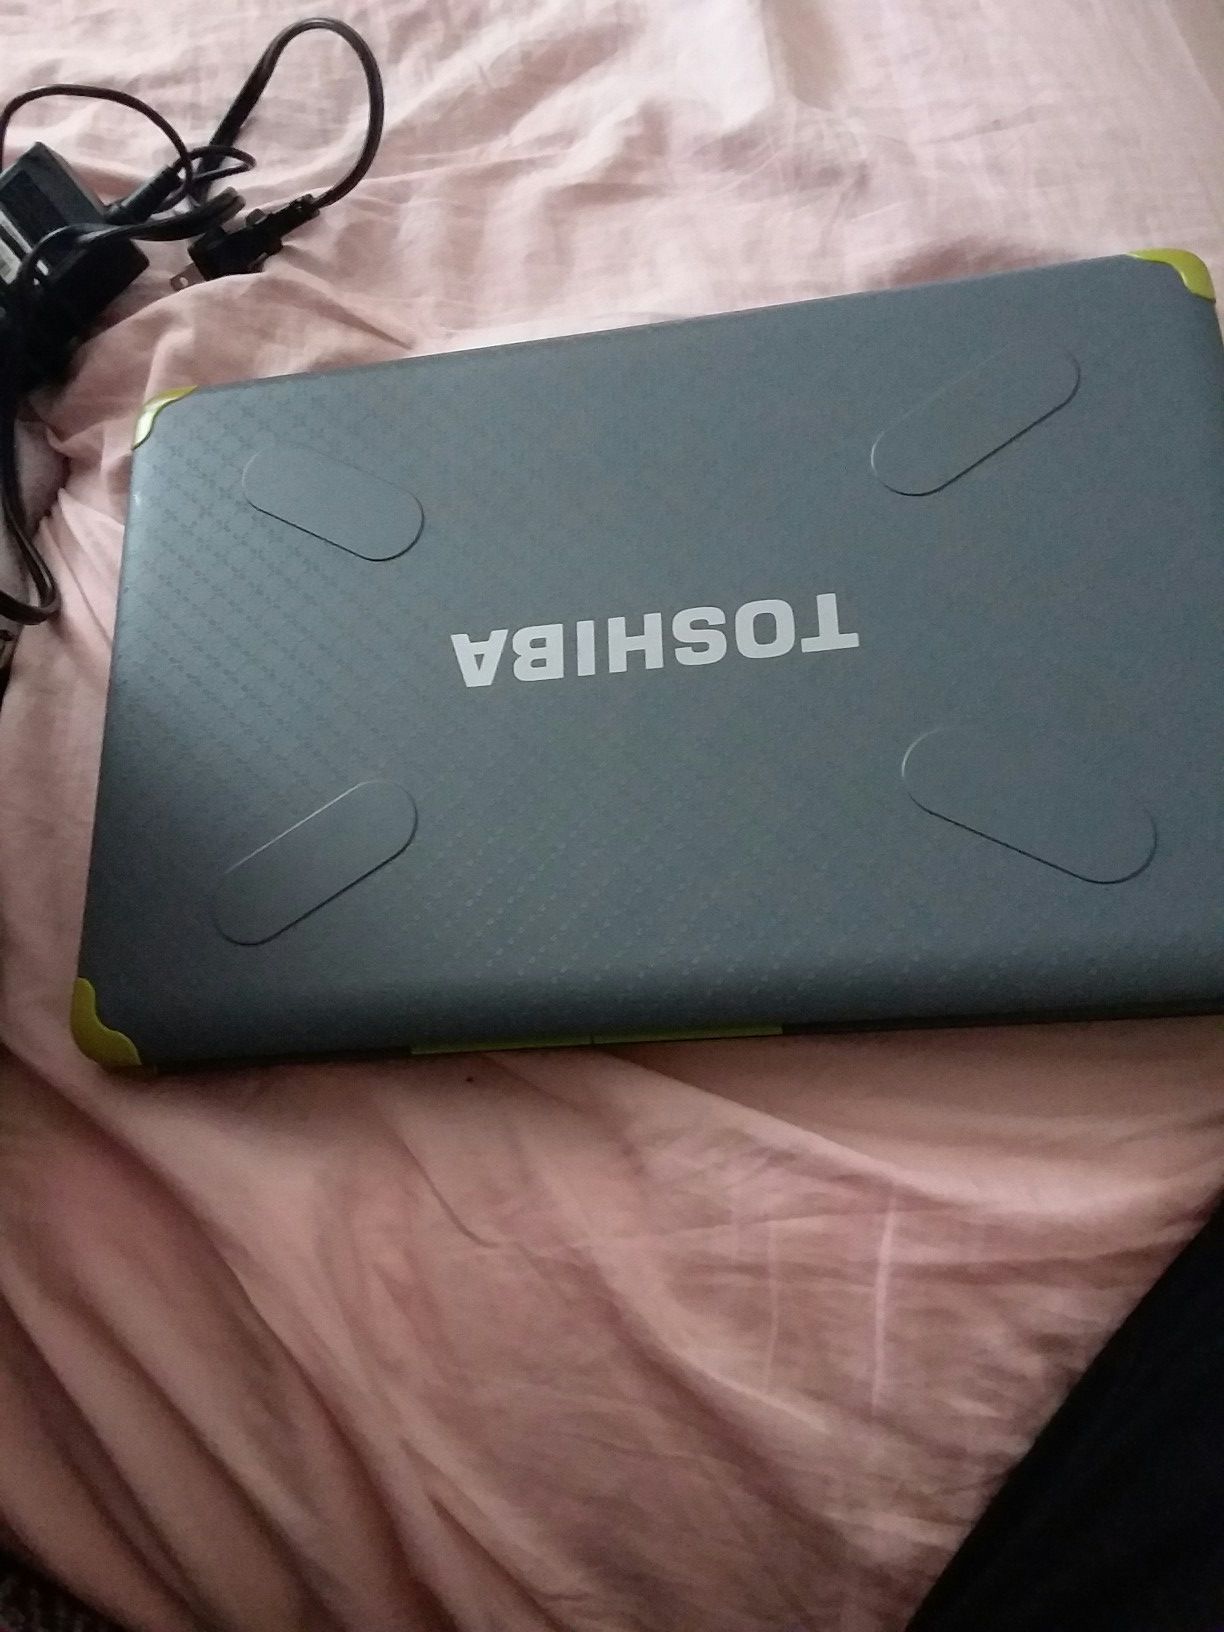 Toshiba Satellite laptop